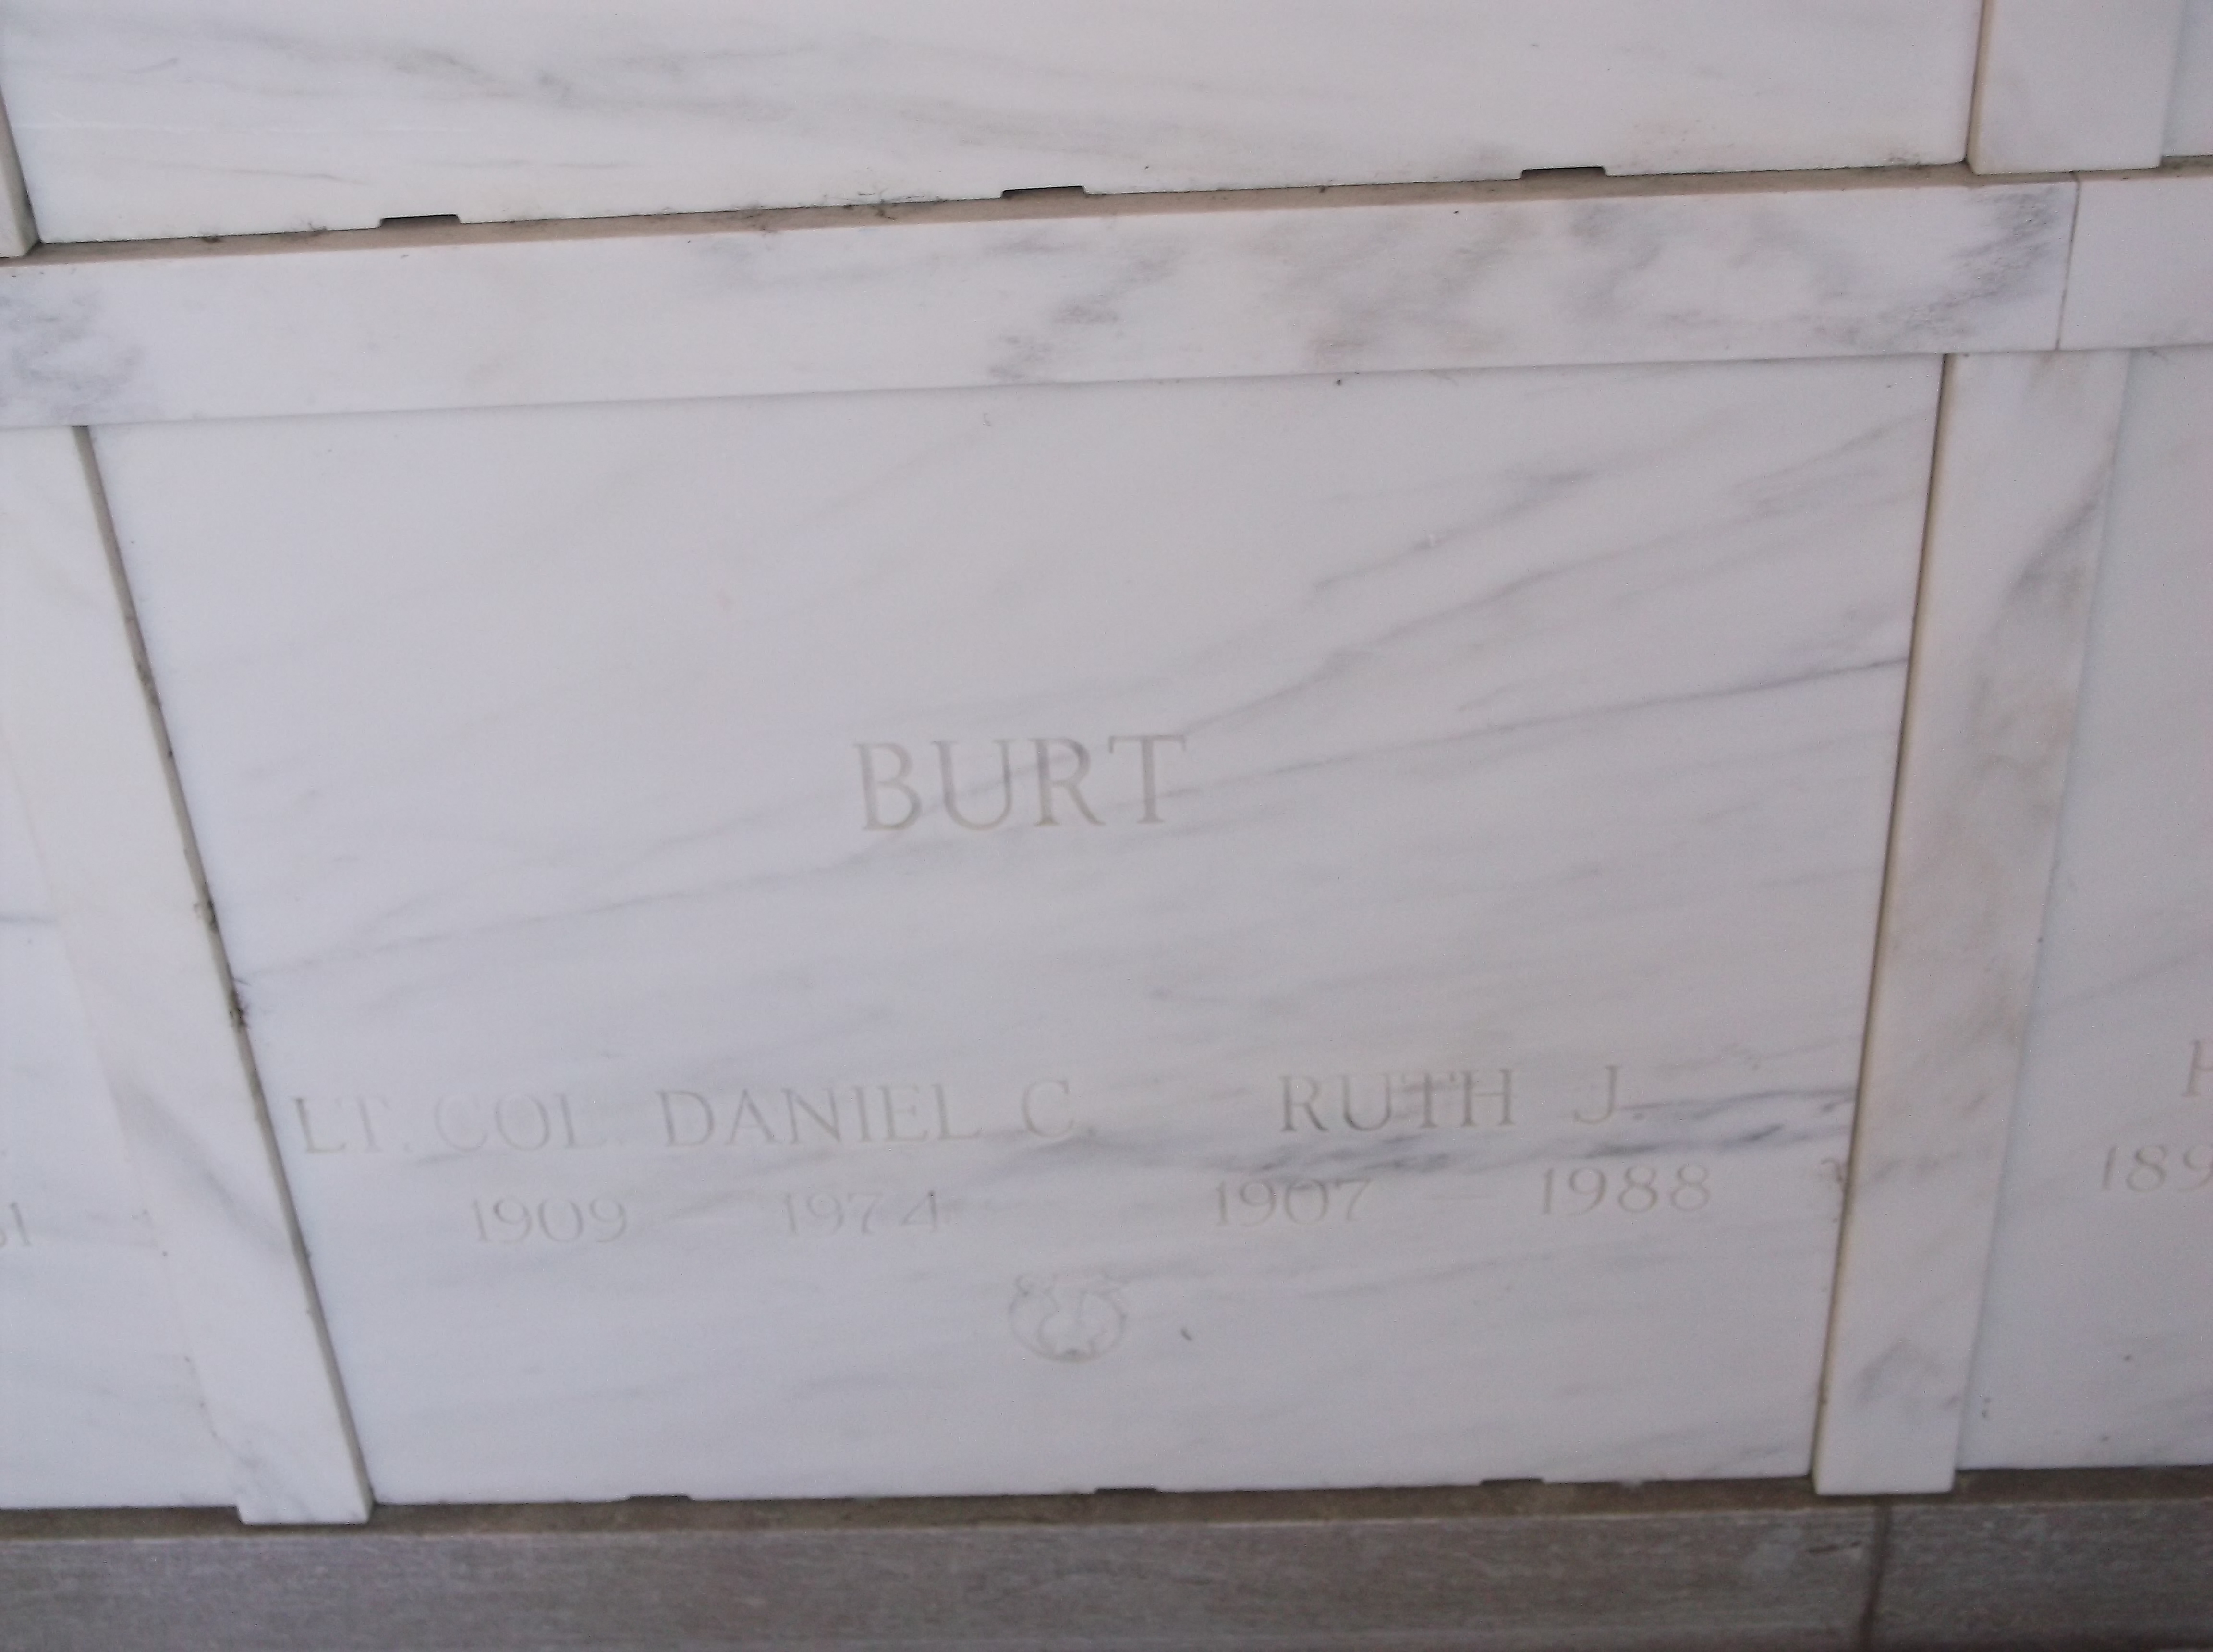 Ruth L Burt